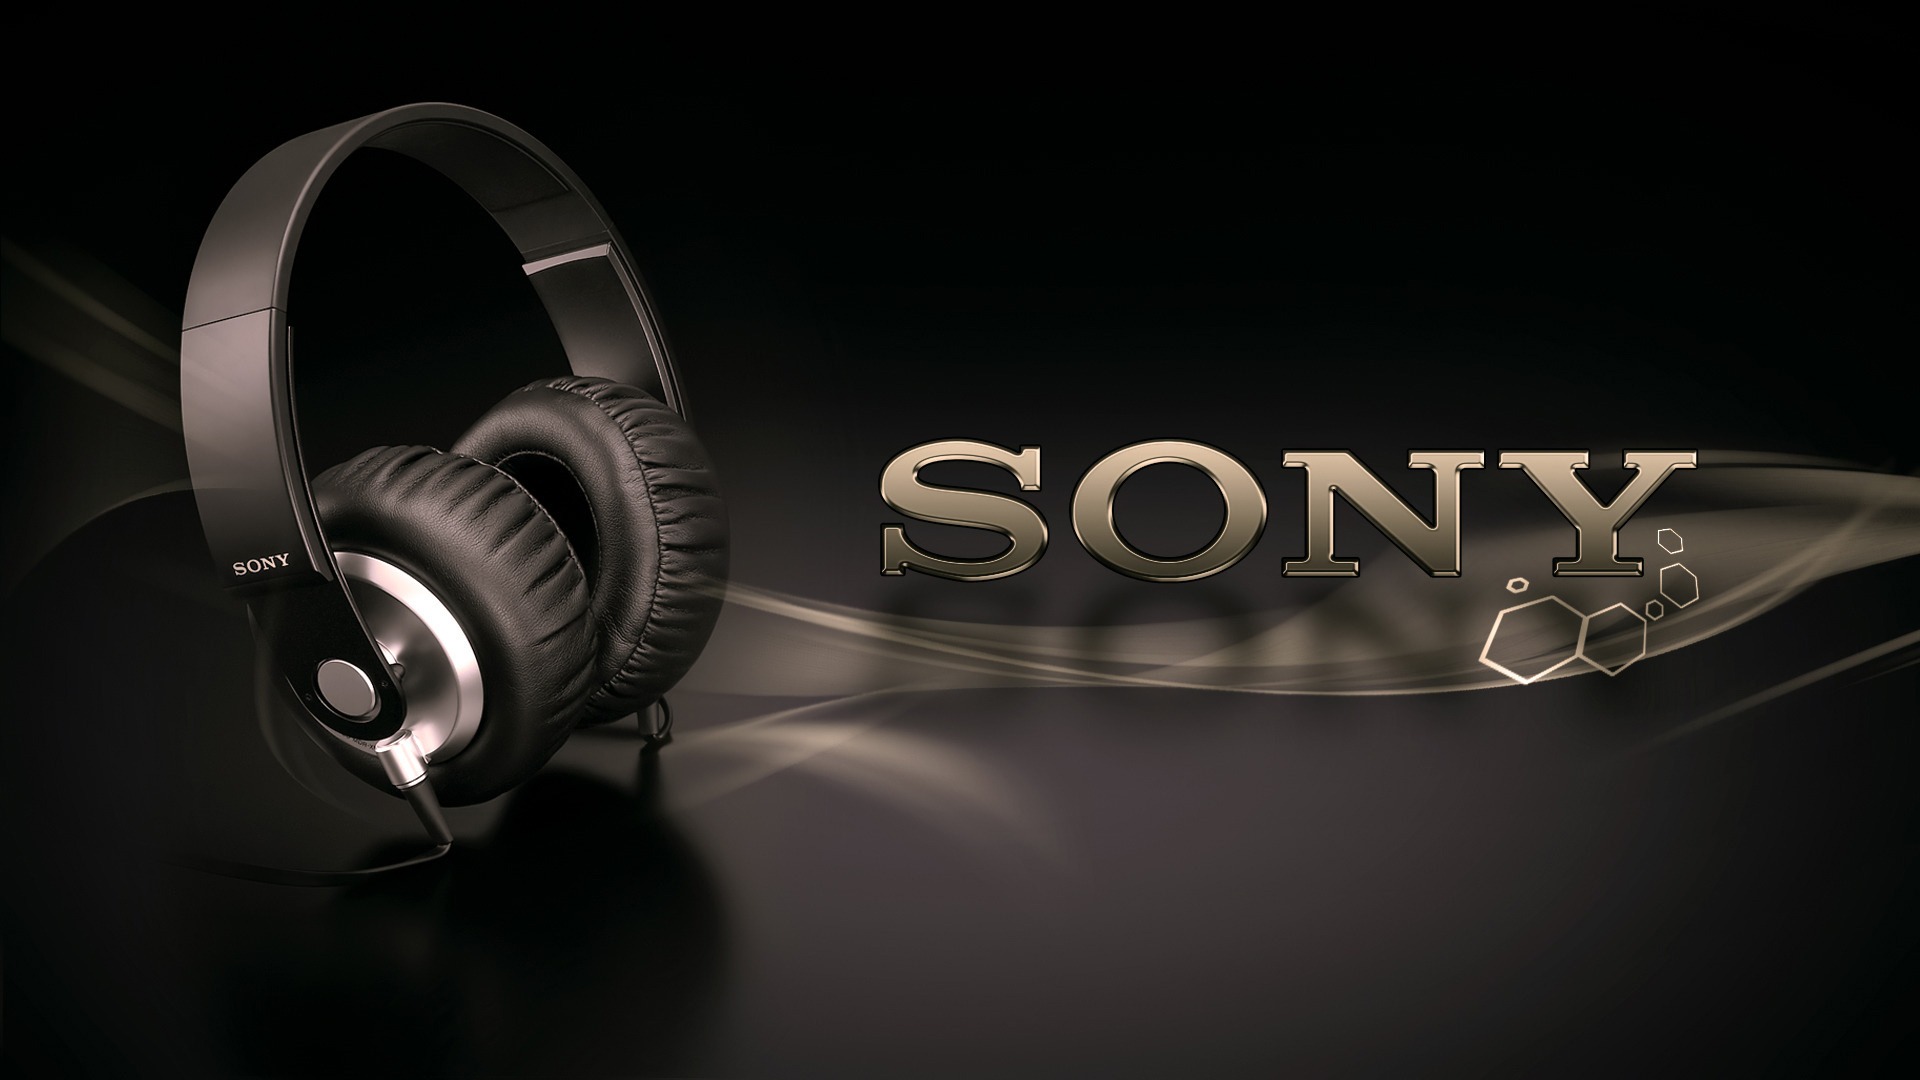 sony-headphones-1920-1080-6019.jpg Sony Wallpaper Hd 1920x1080